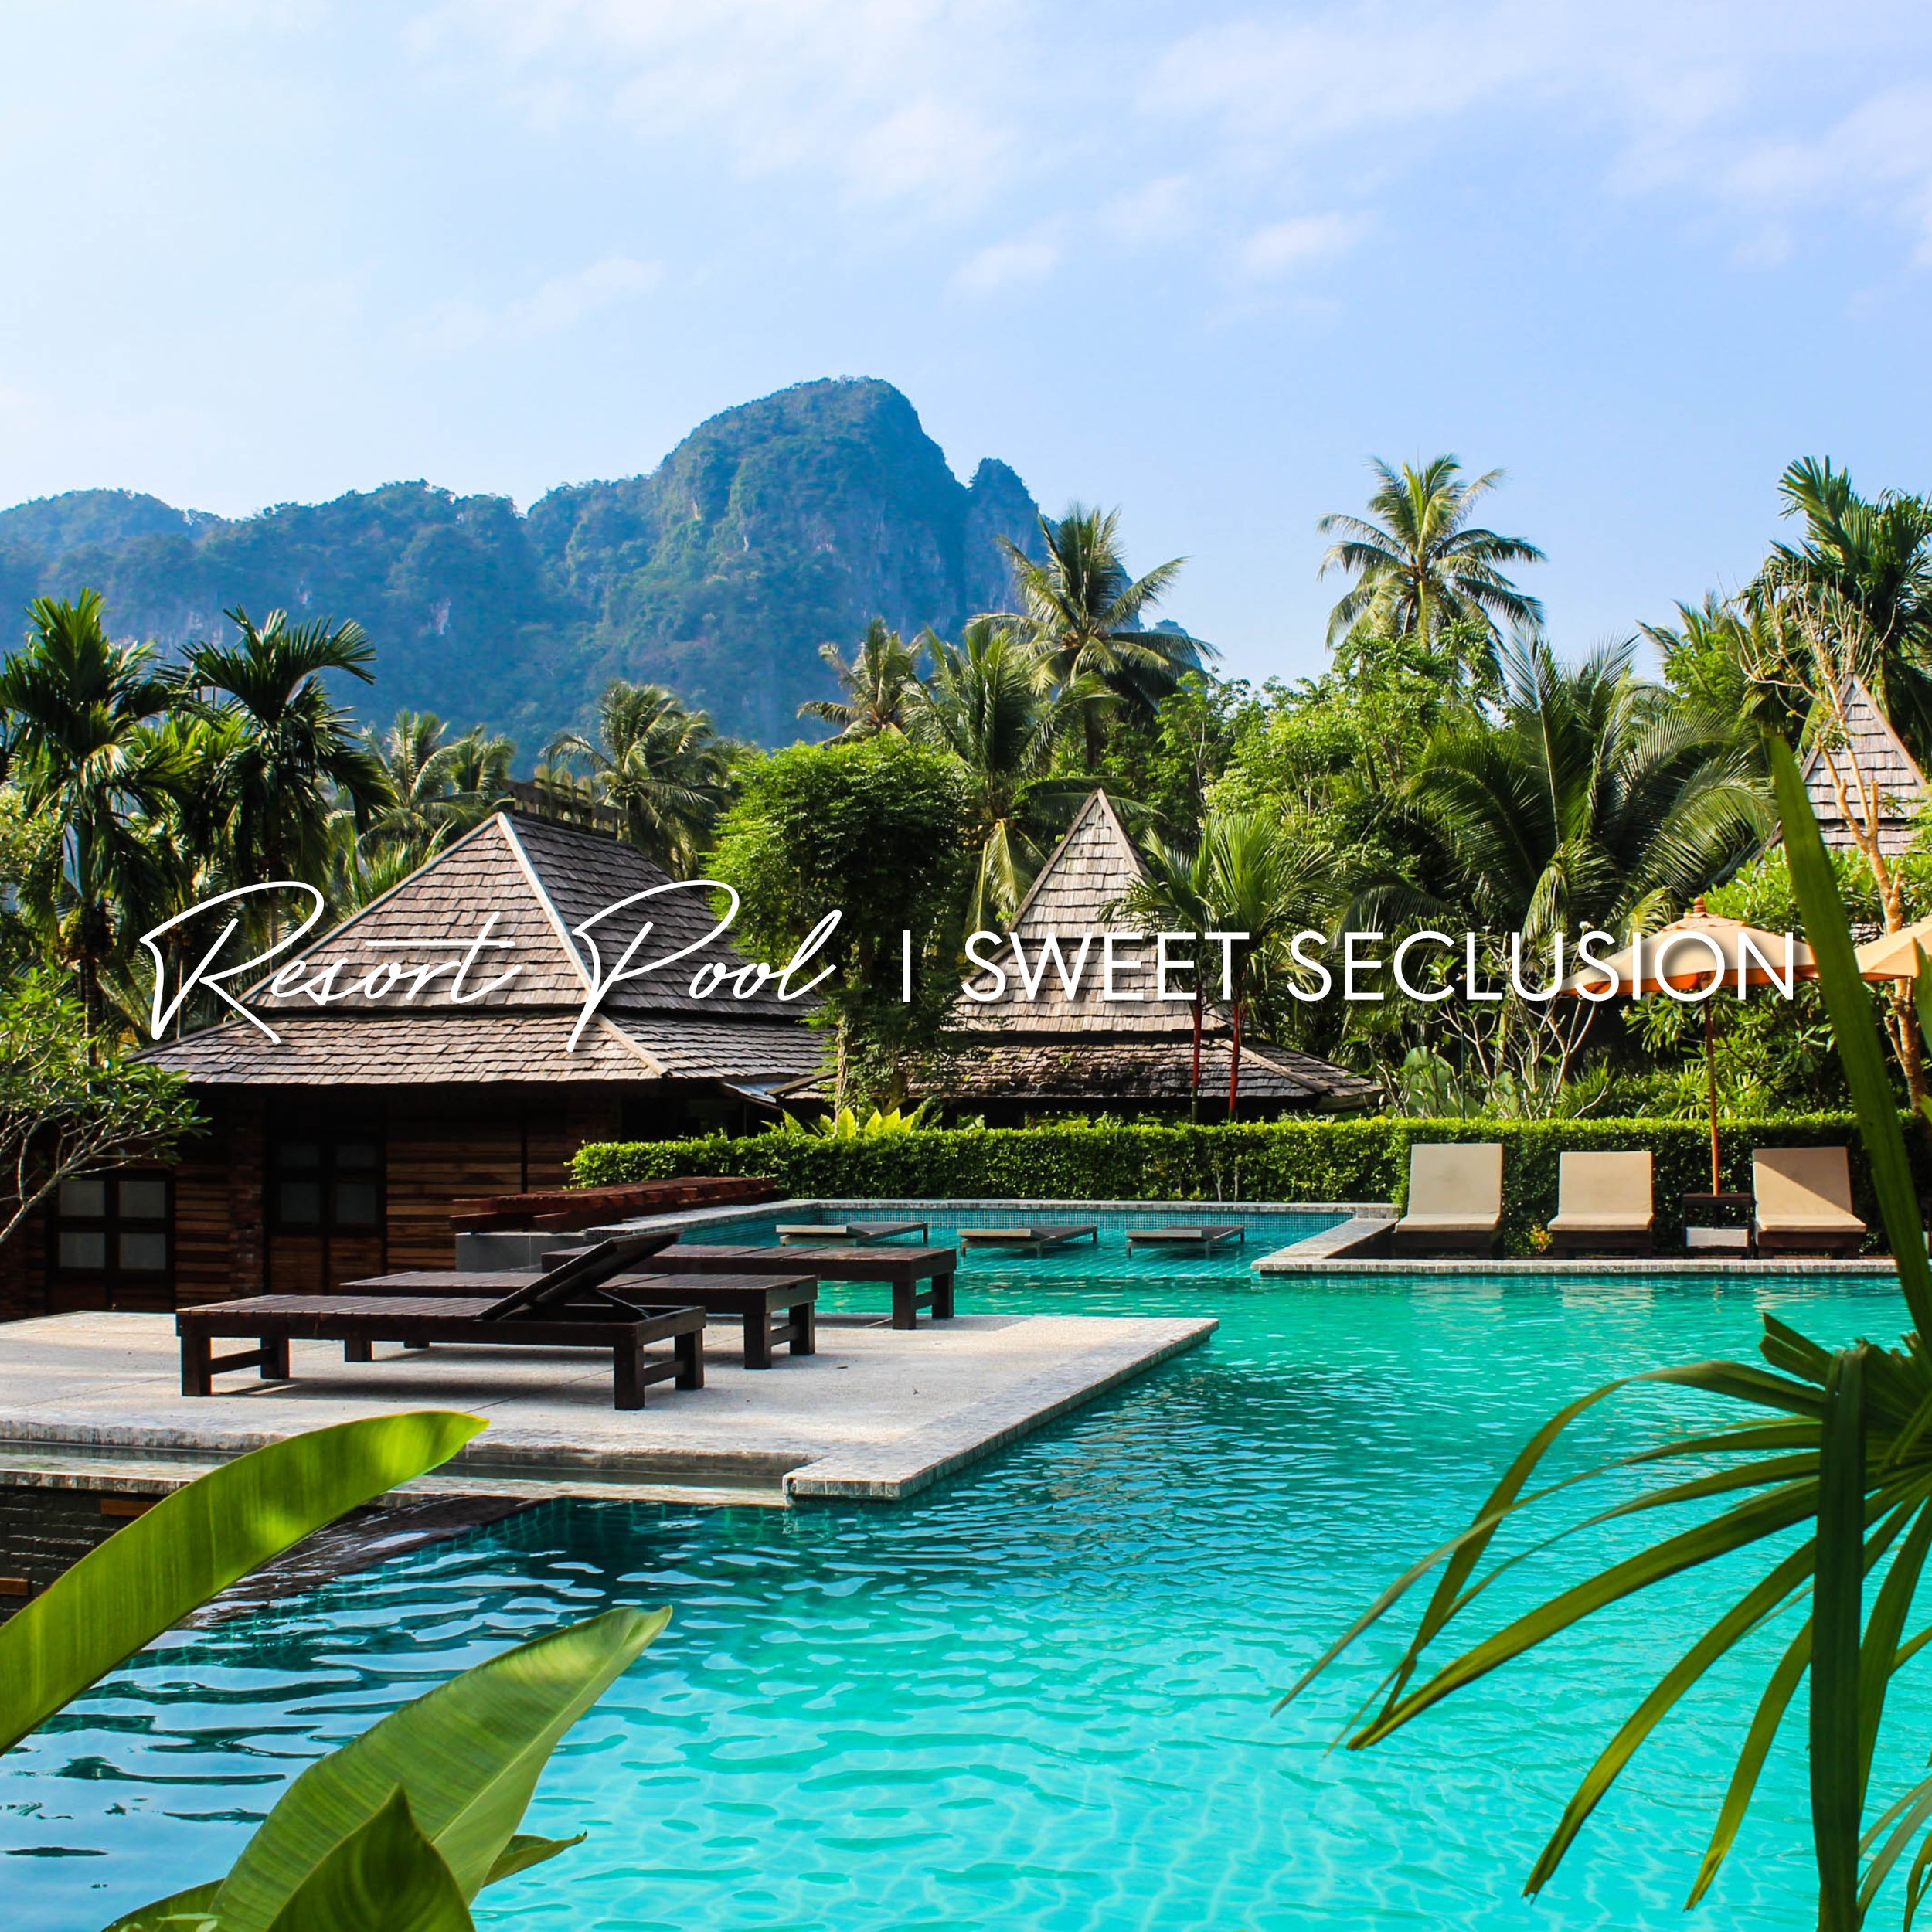 Resort Pool - Sweet Seclusion - Artwork.jpg